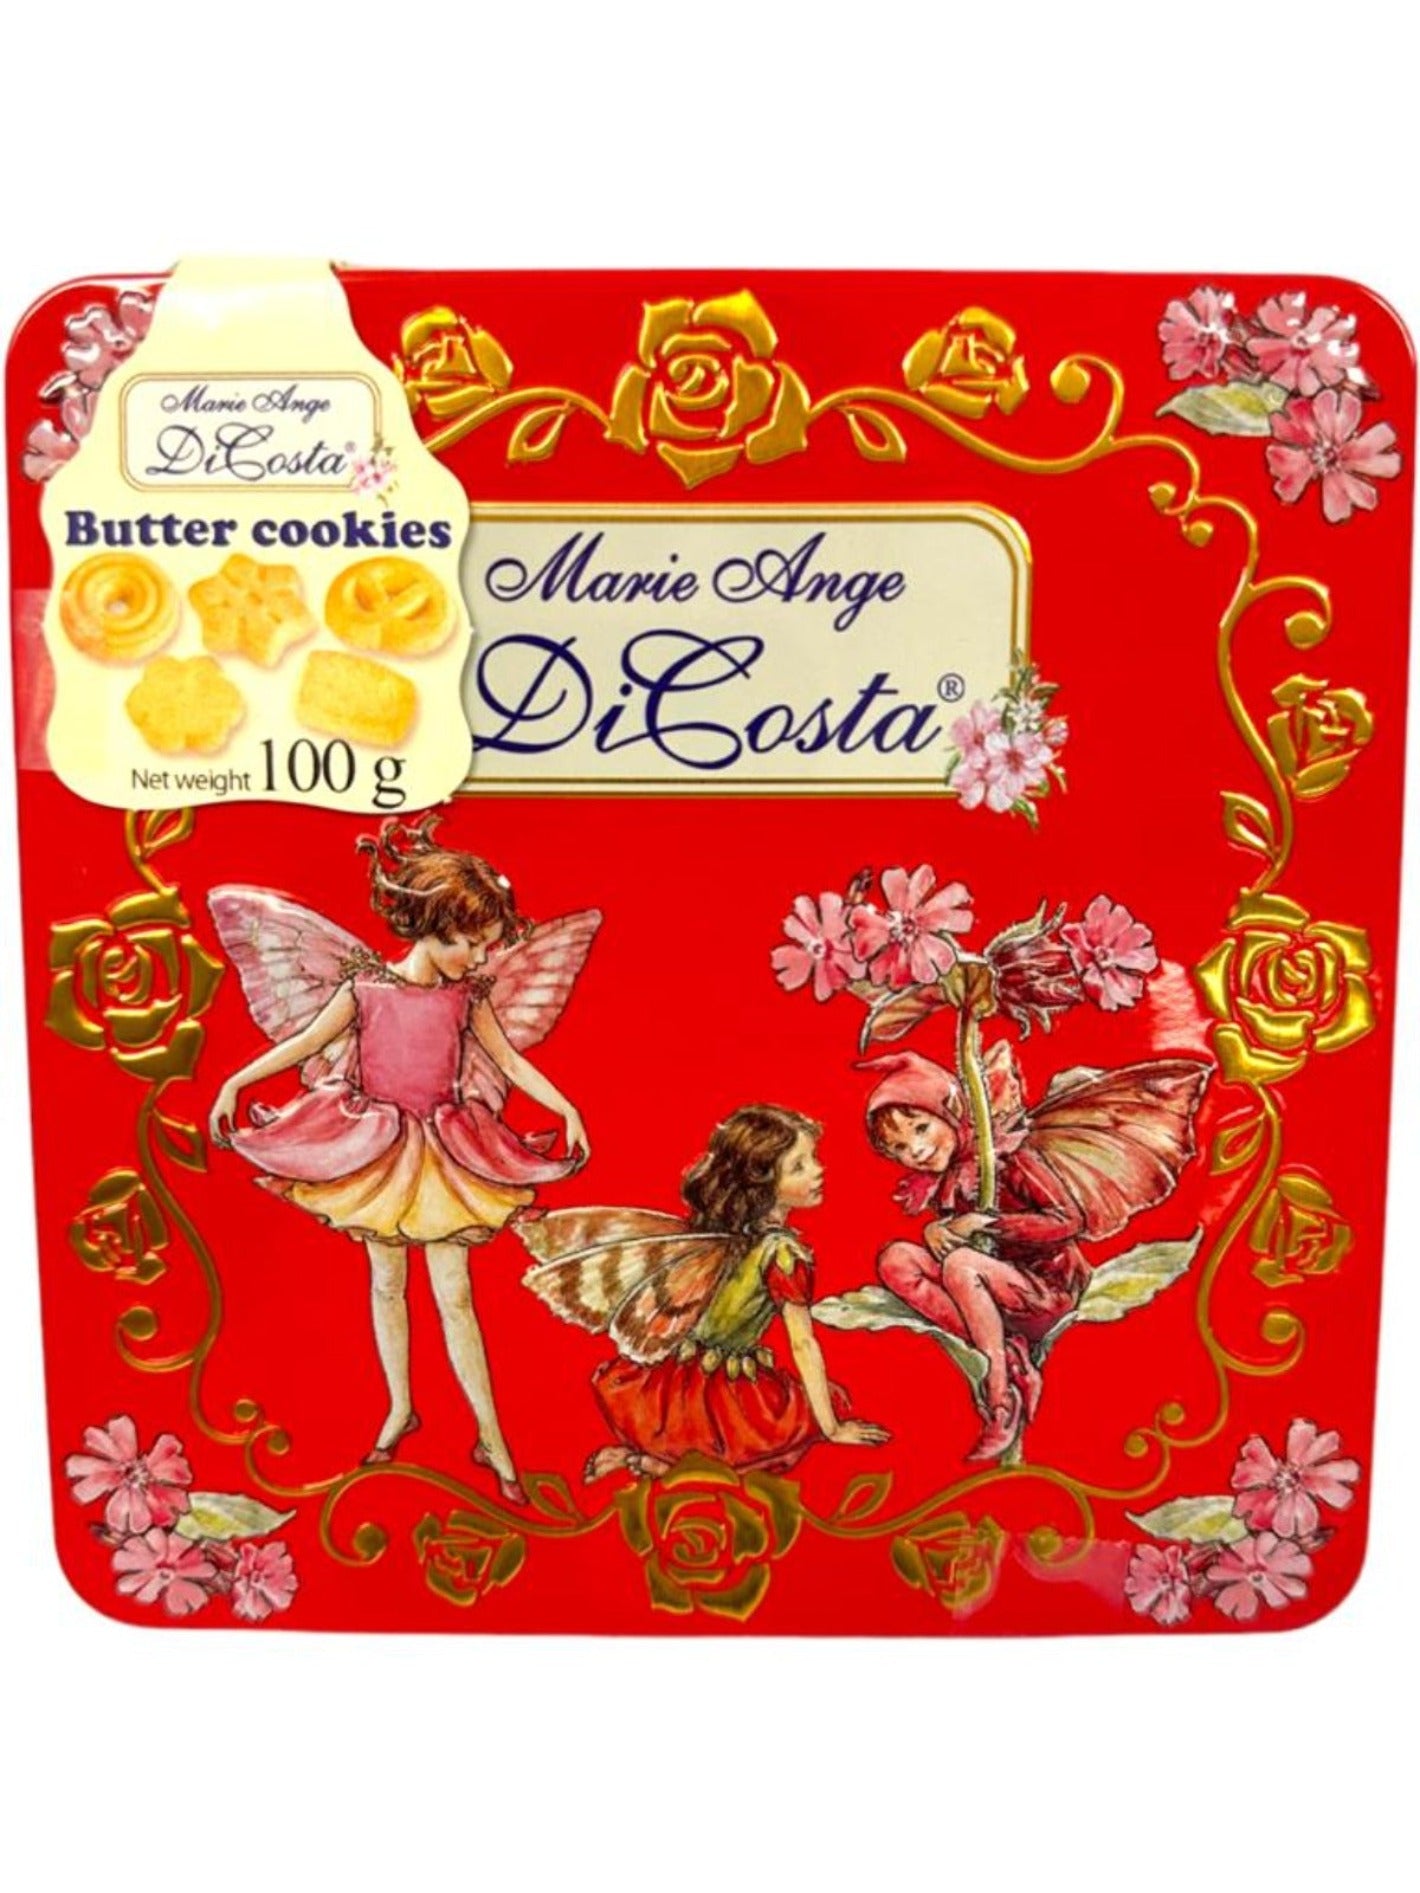 Marie Ange di Costa Flower Fairy Italian Butter Cookies—Il Quadretto in Red  100g